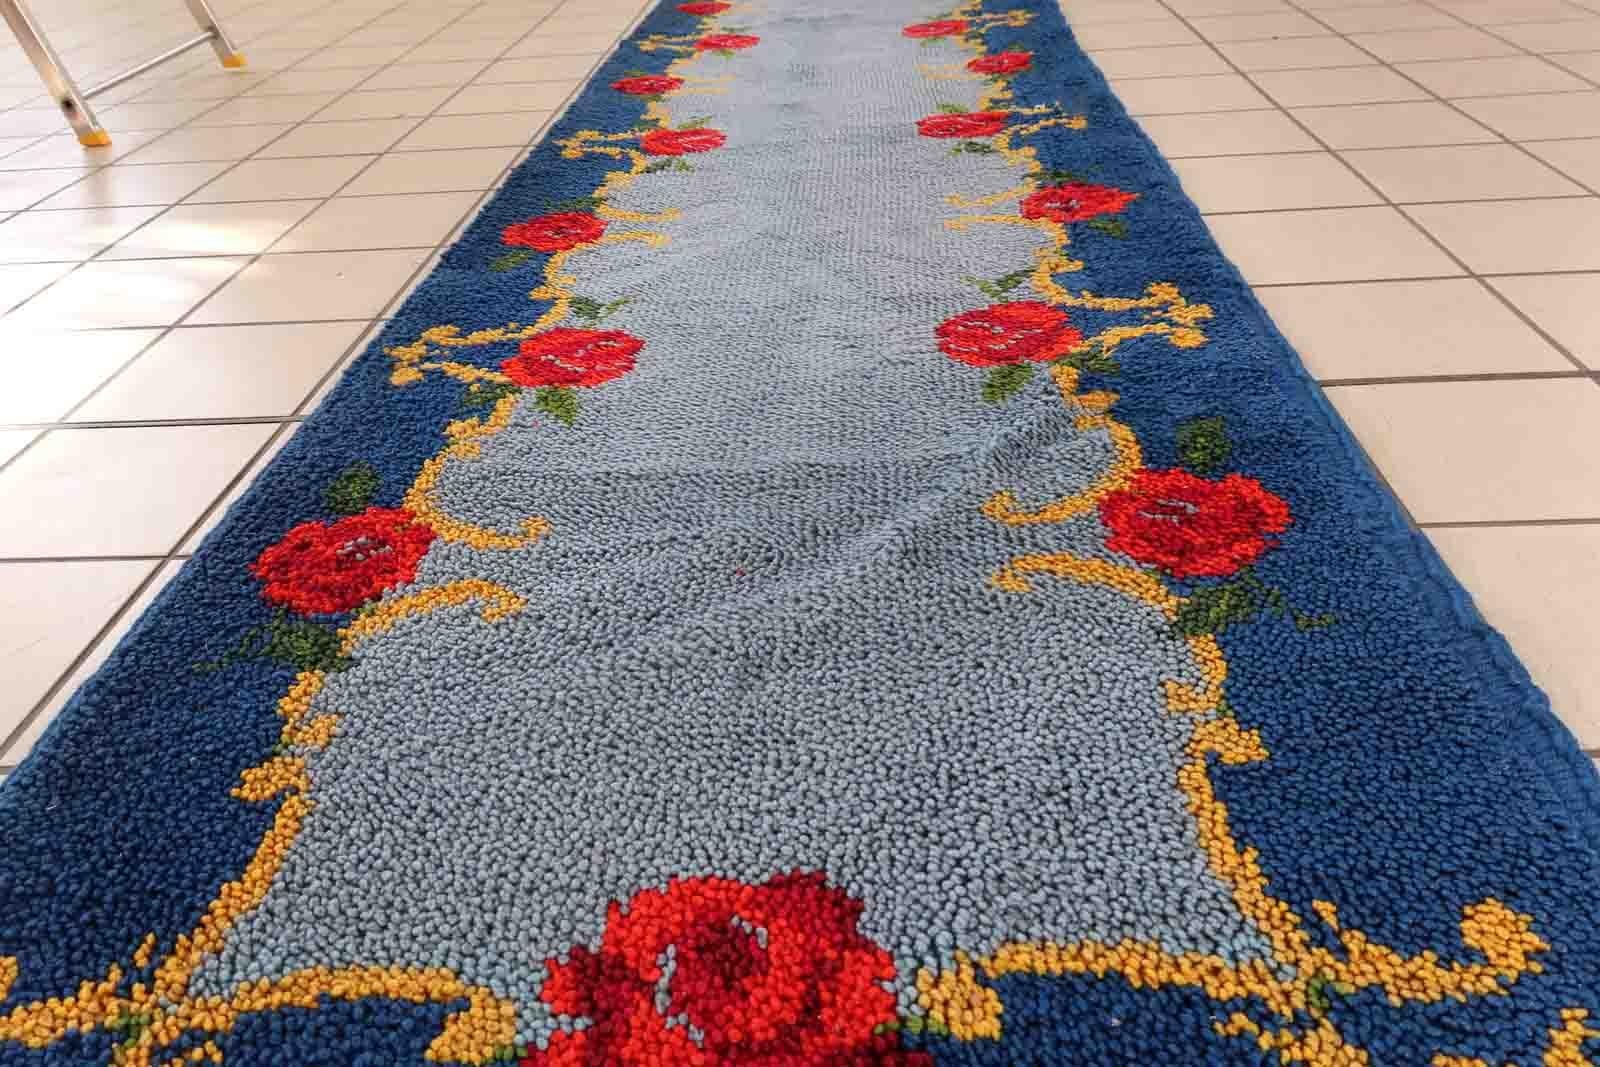 Vieux chemin de table en Savonnerie française de couleur bleue avec un motif floral. Le tapis est de la fin du 20ème siècle en bon état d'origine.

-condition : original bon,

-circa : 1960s,

-Taille : 2,4' x 11,4' (76cm x